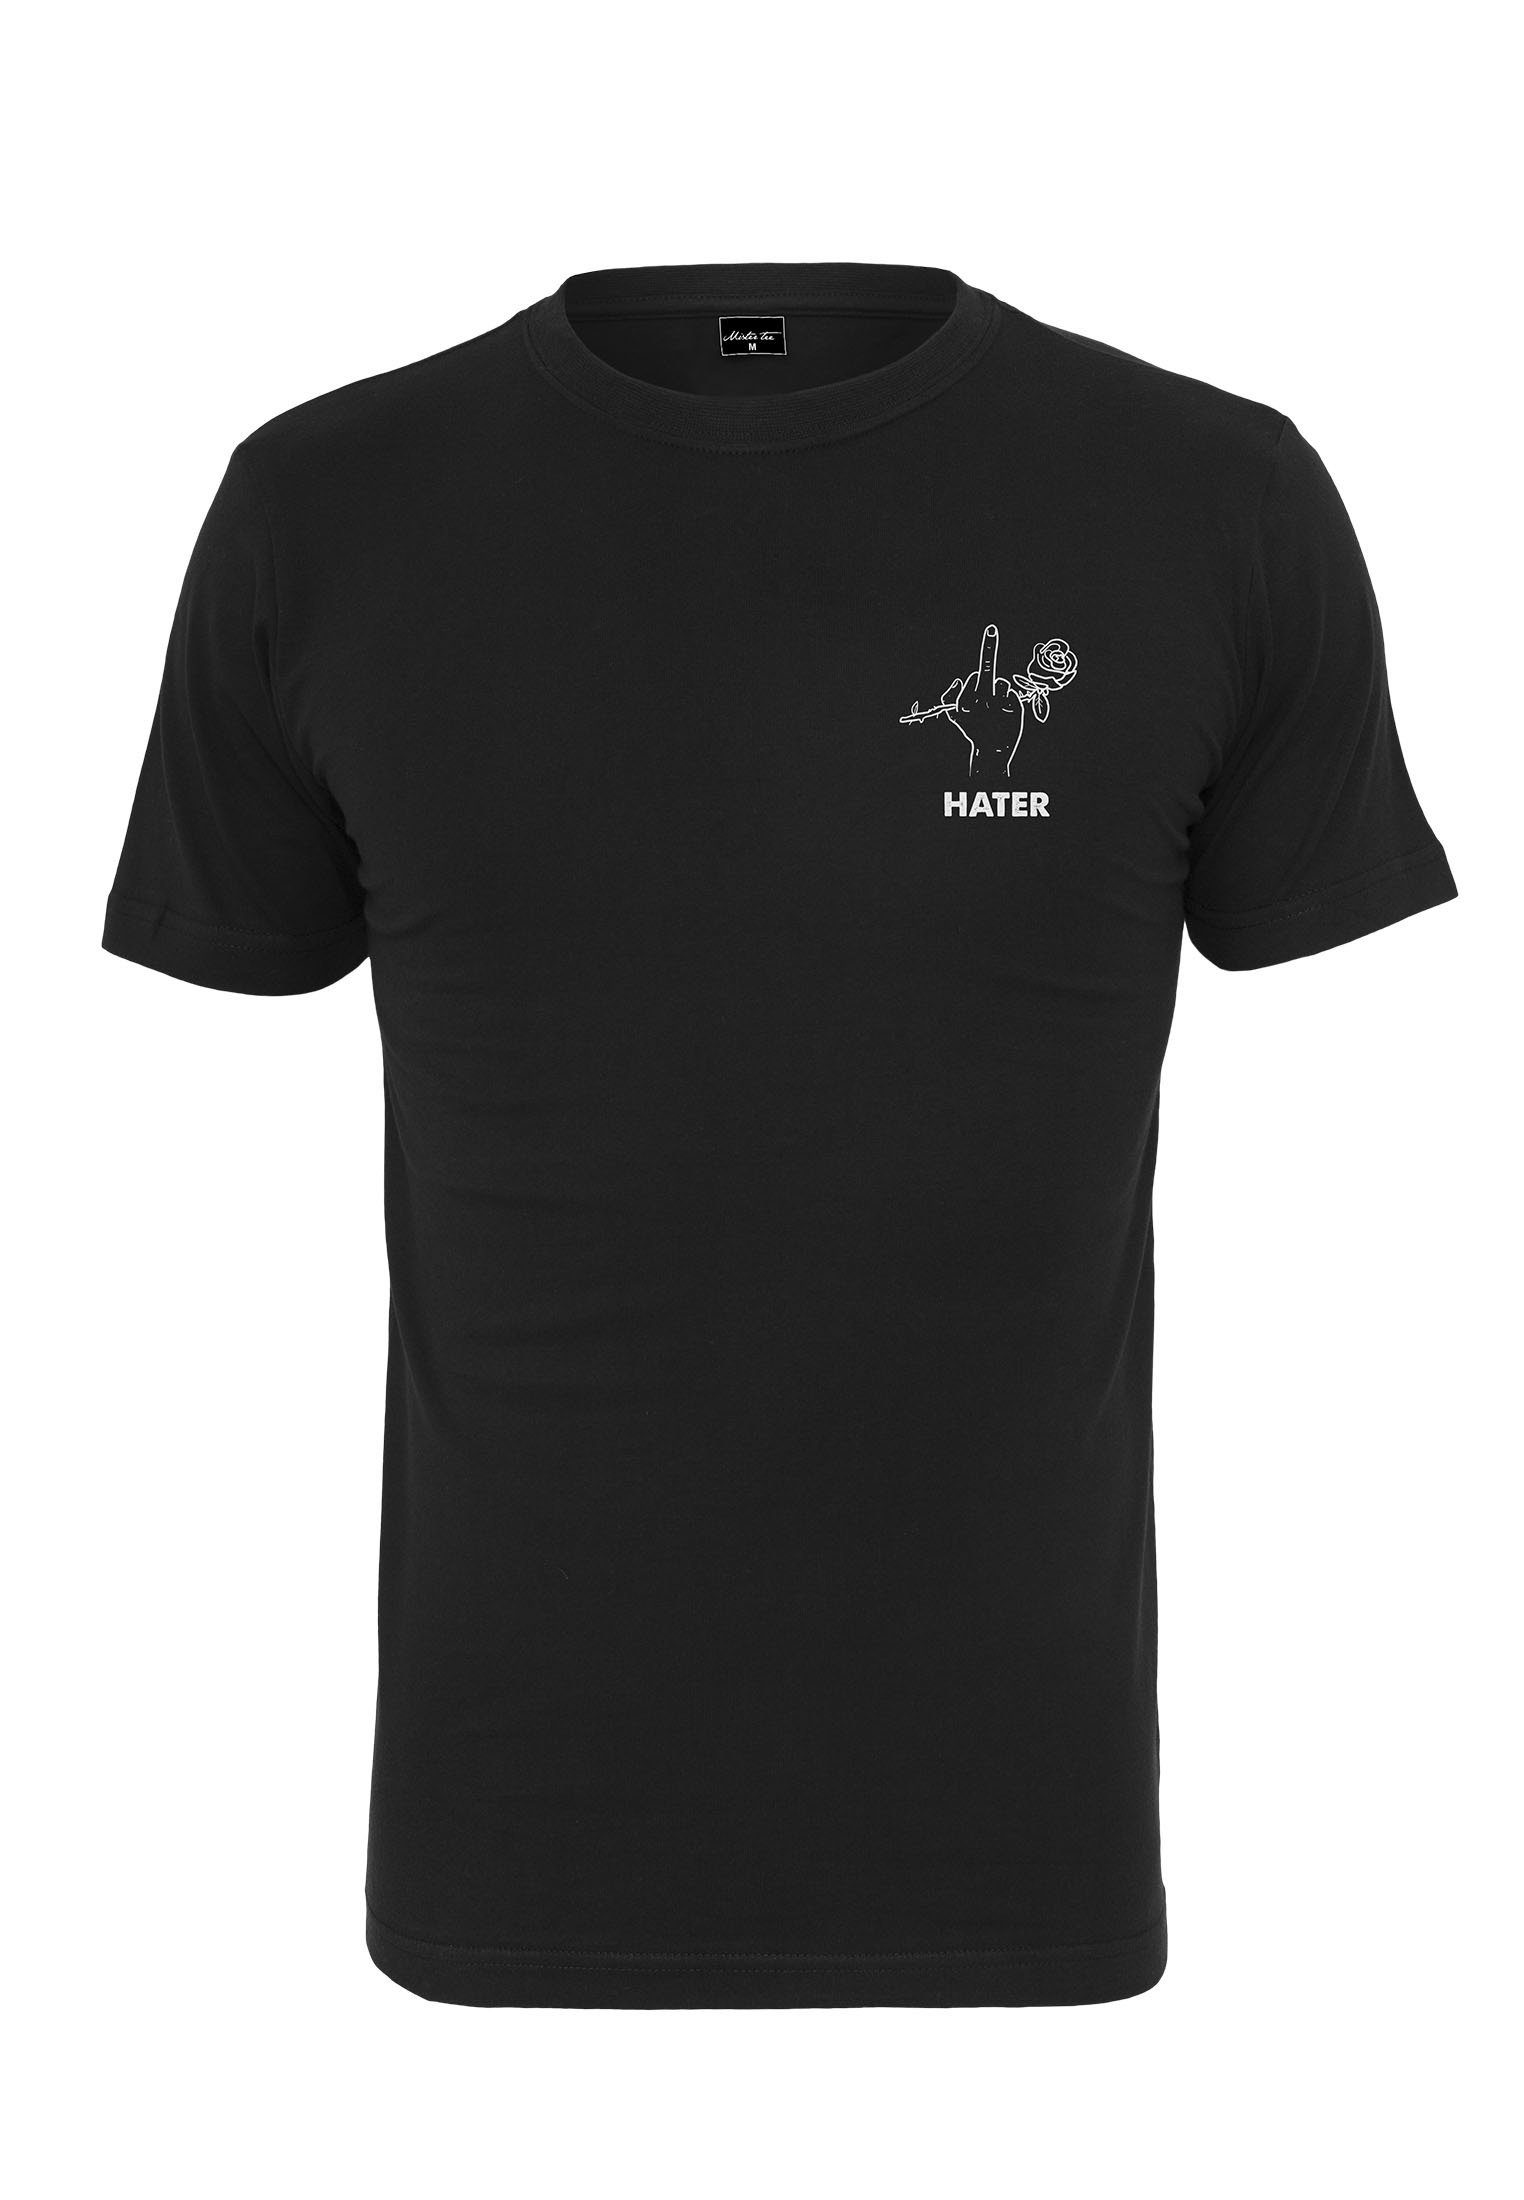 MisterTee T-Shirt Herren black Hater Tee MT808 (1-tlg) Hater